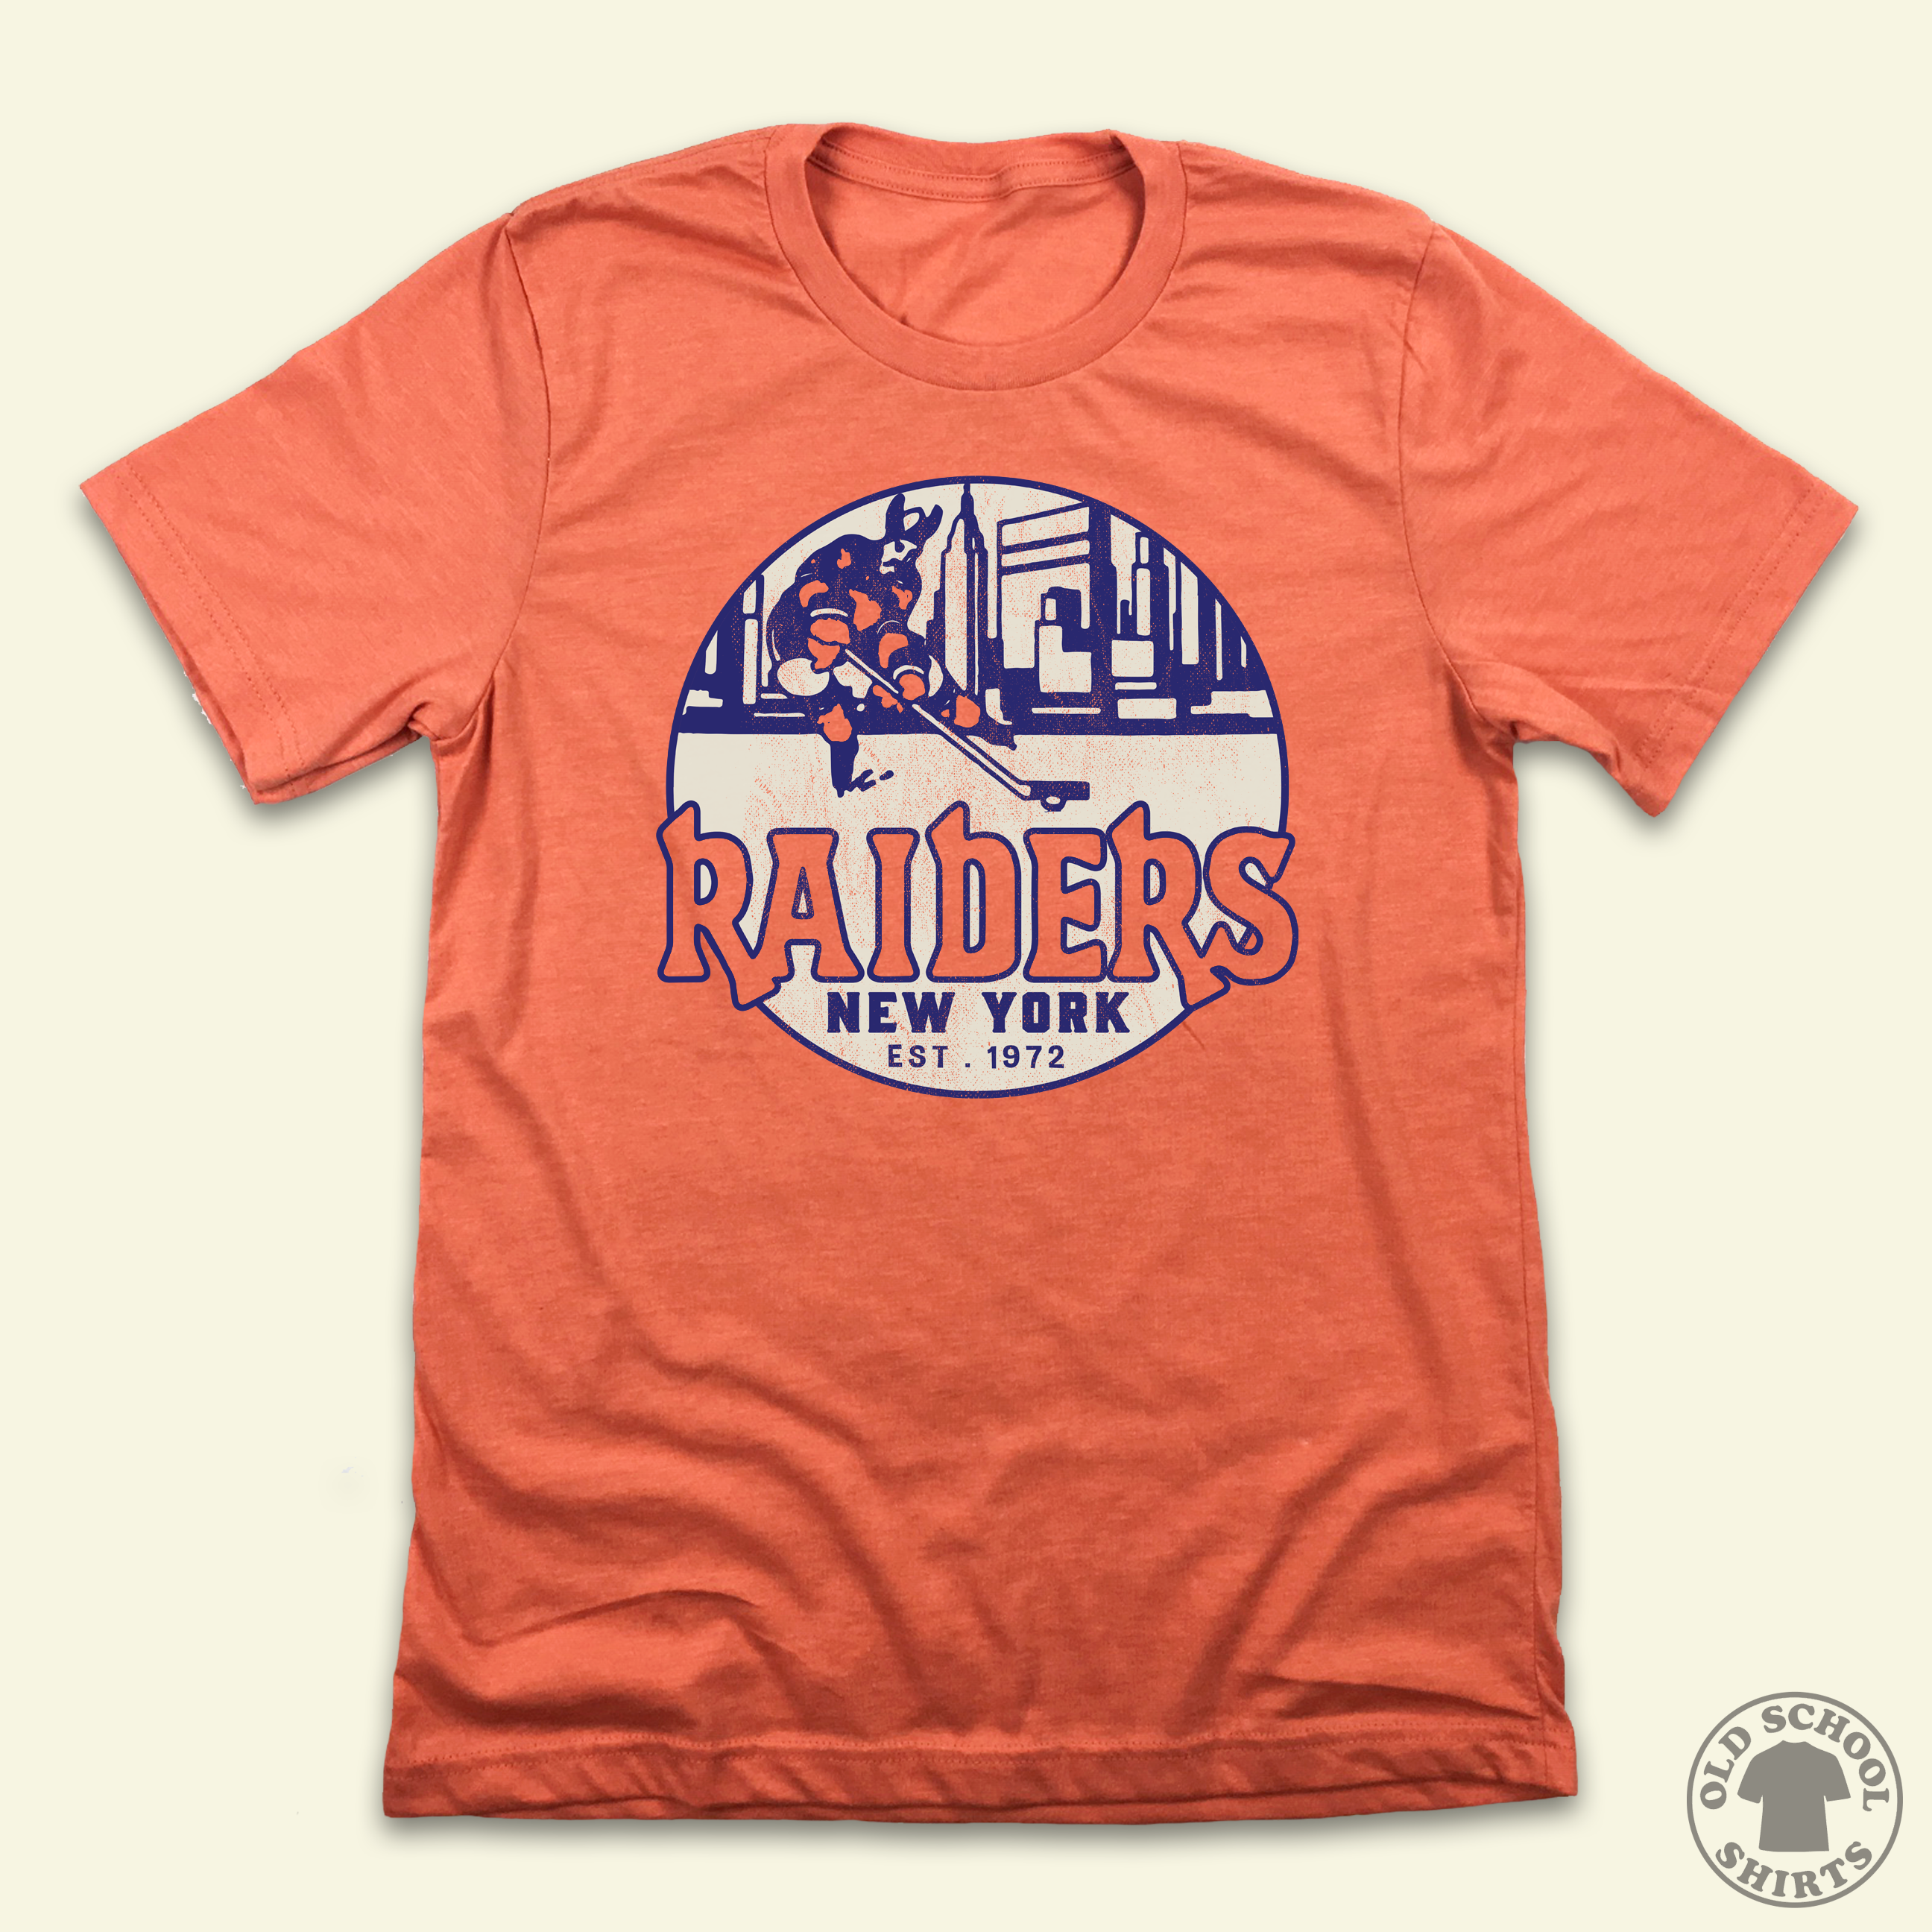 Vintage Los Angeles Raiders T-Shirt 1993 NFL Football Oakland Las